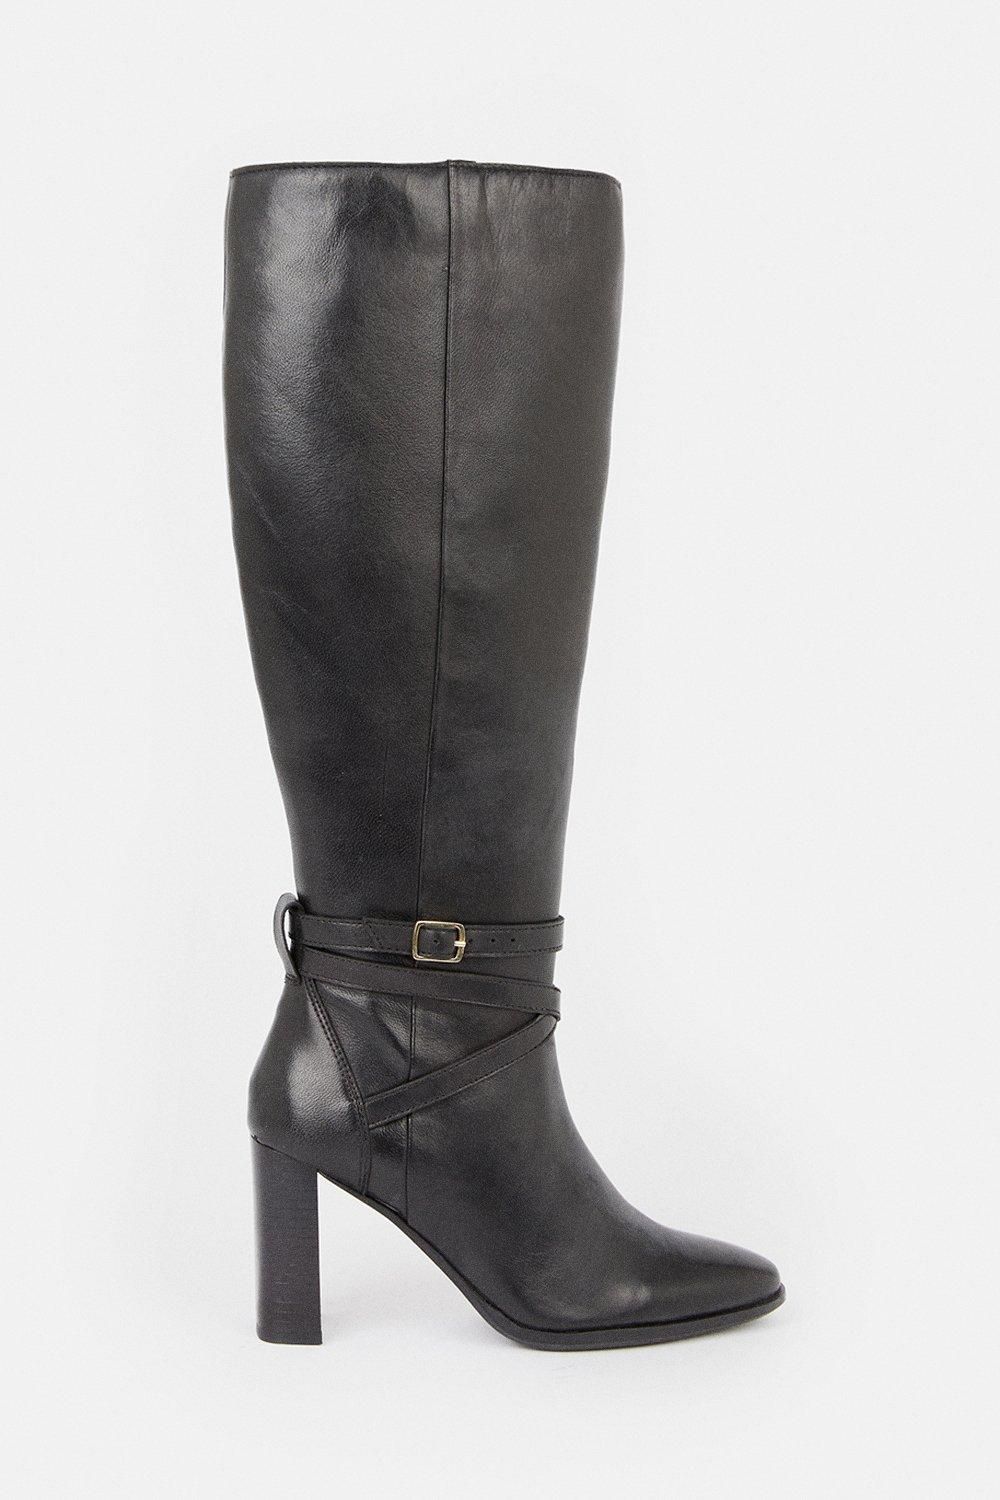 Leather Heeled Buckle Detail Knee High | Karen Millen UK + IE + DE + NL